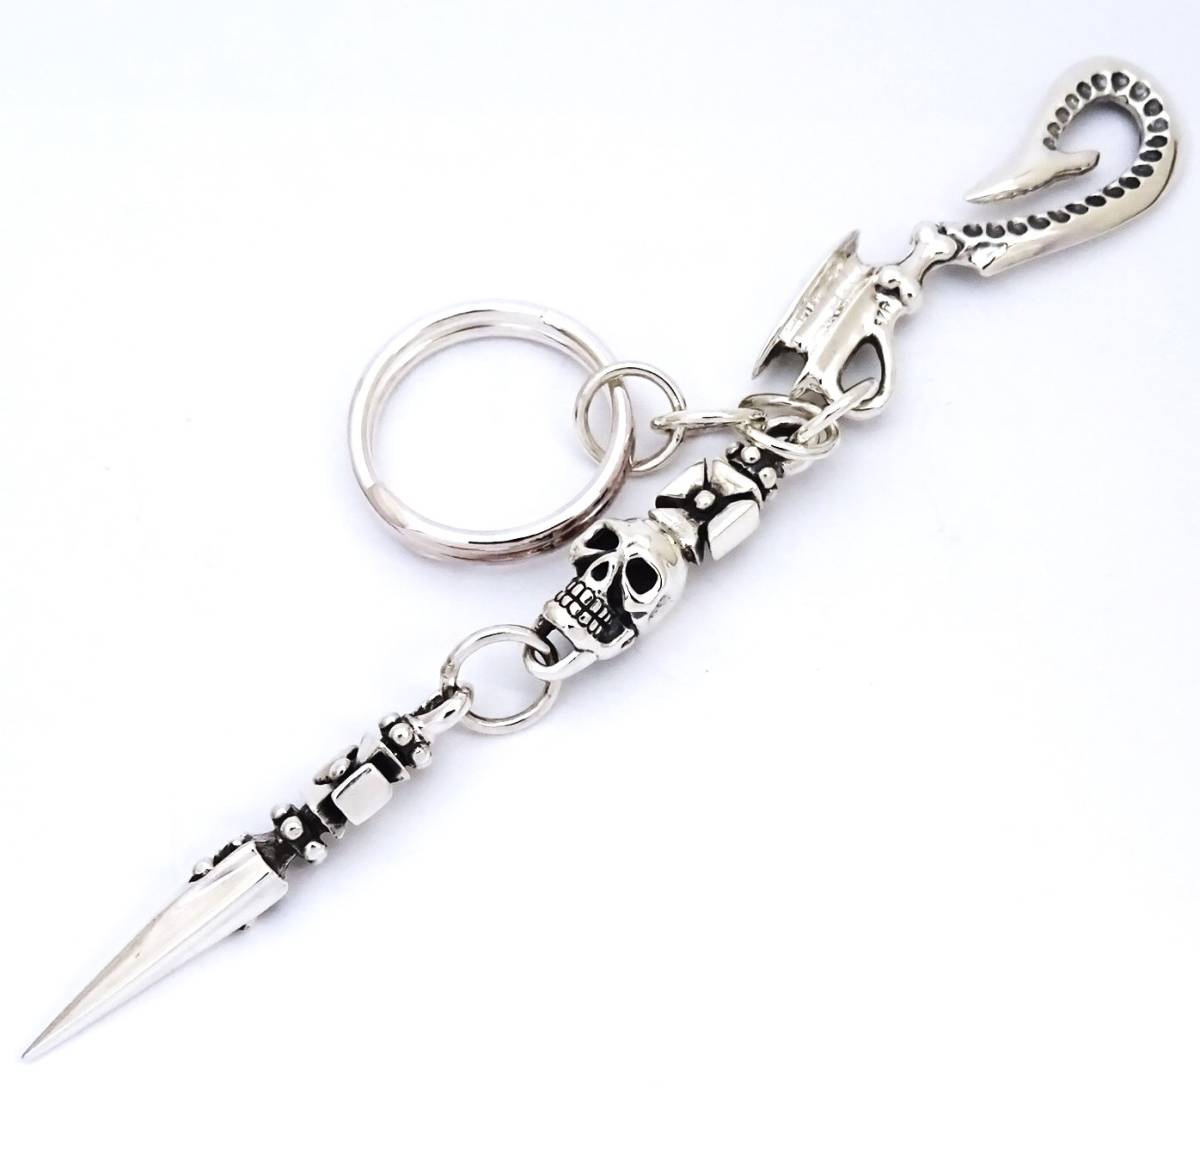 * серебряный 925 Skull Cross daga- ремень крюк кольцо для ключей новый товар не использовался * Skull Cross daga- цепочка для ключей кольцо для ключей ремень крюк 